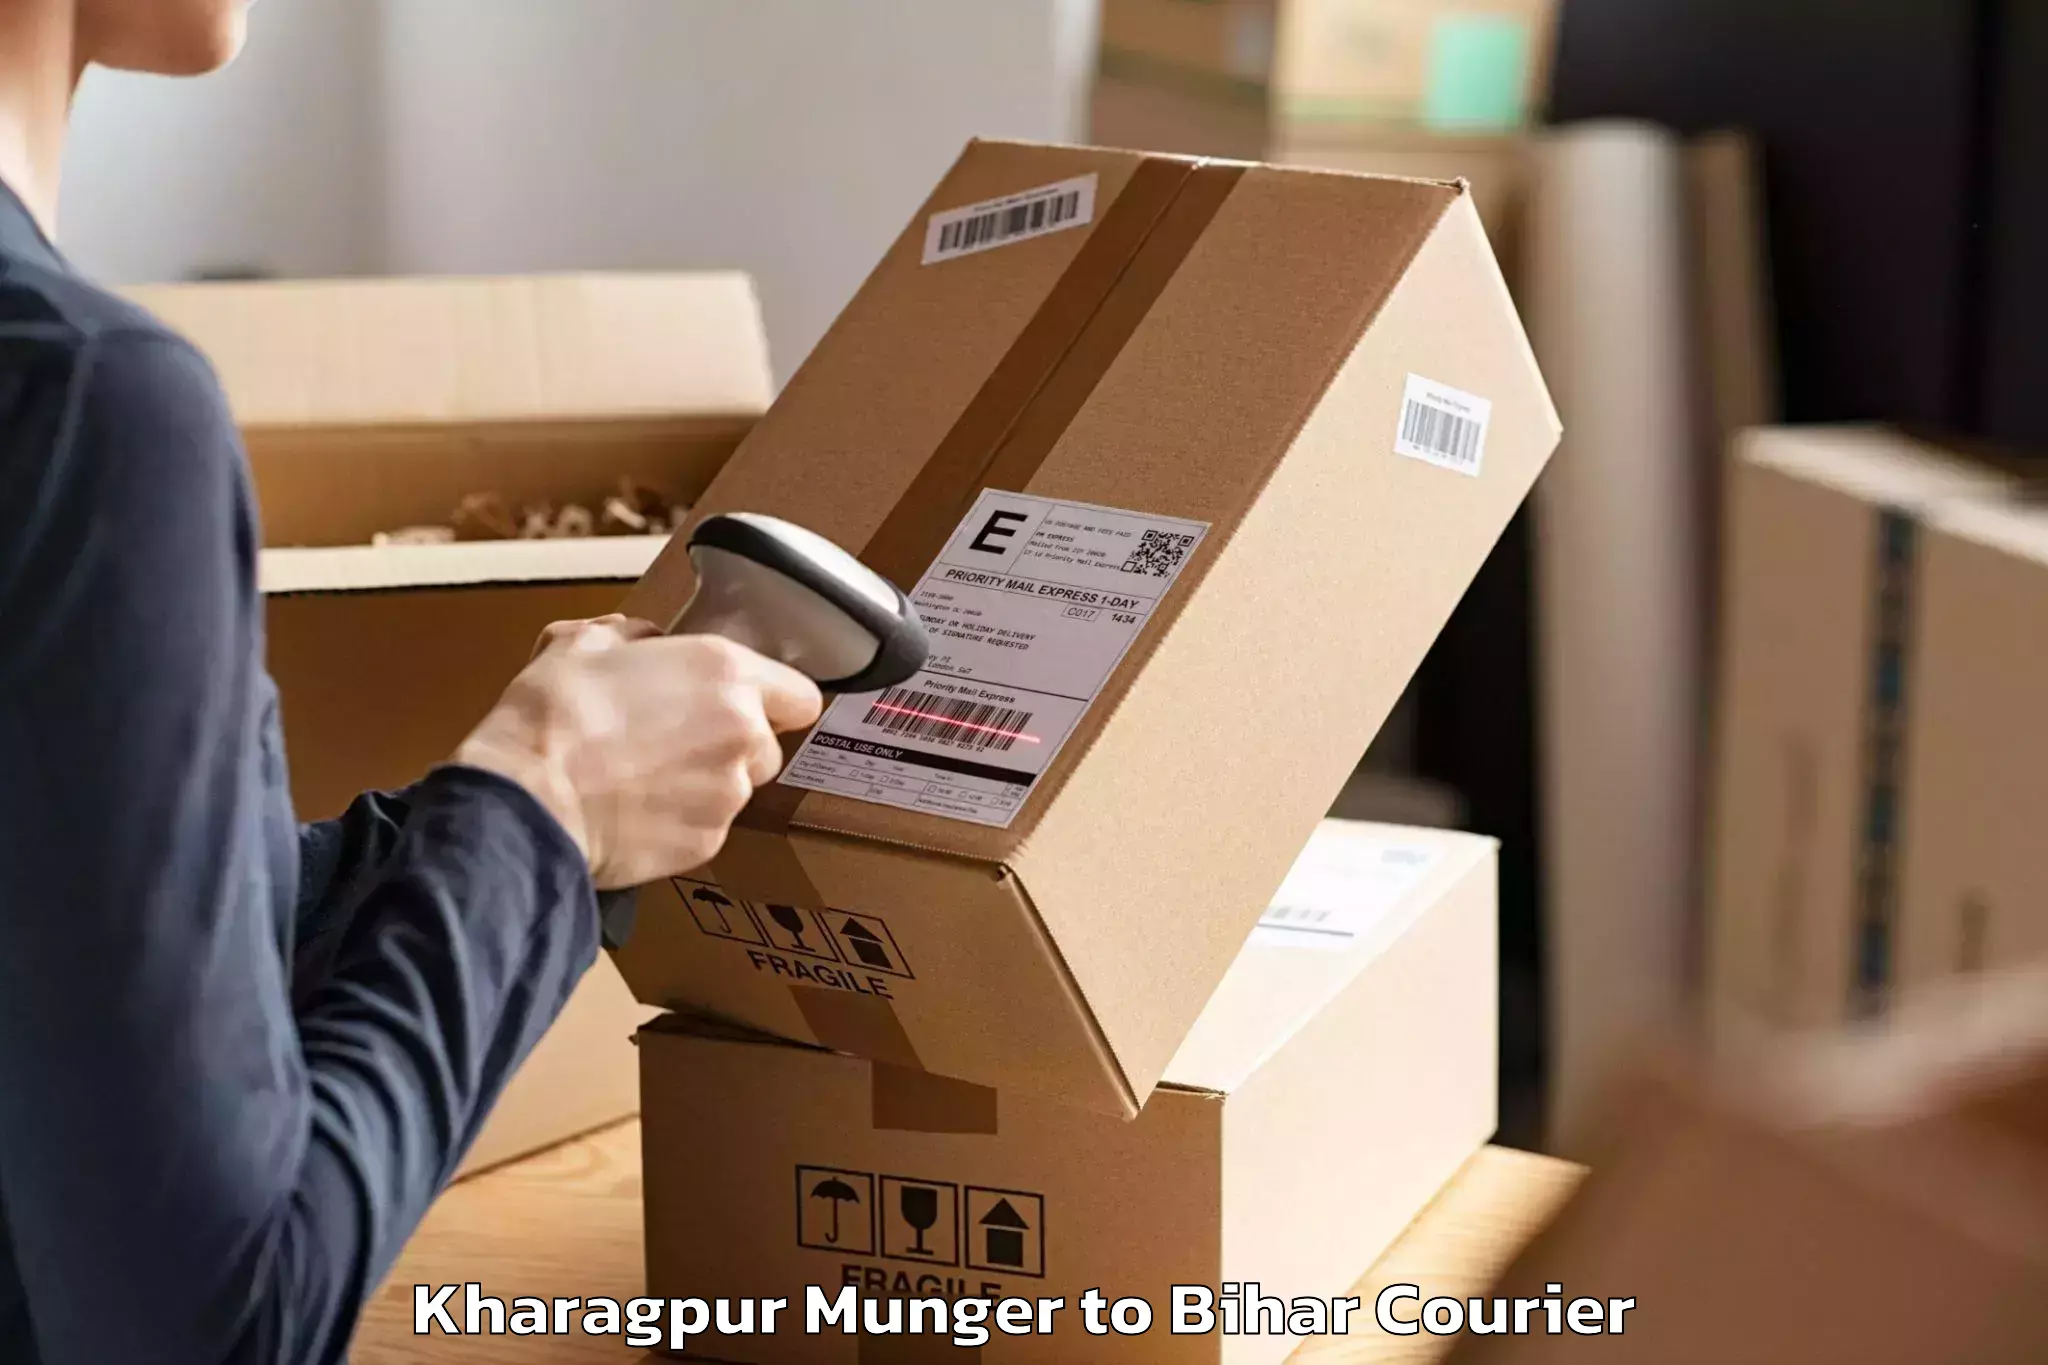 Furniture moving experts Kharagpur Munger to Minapur